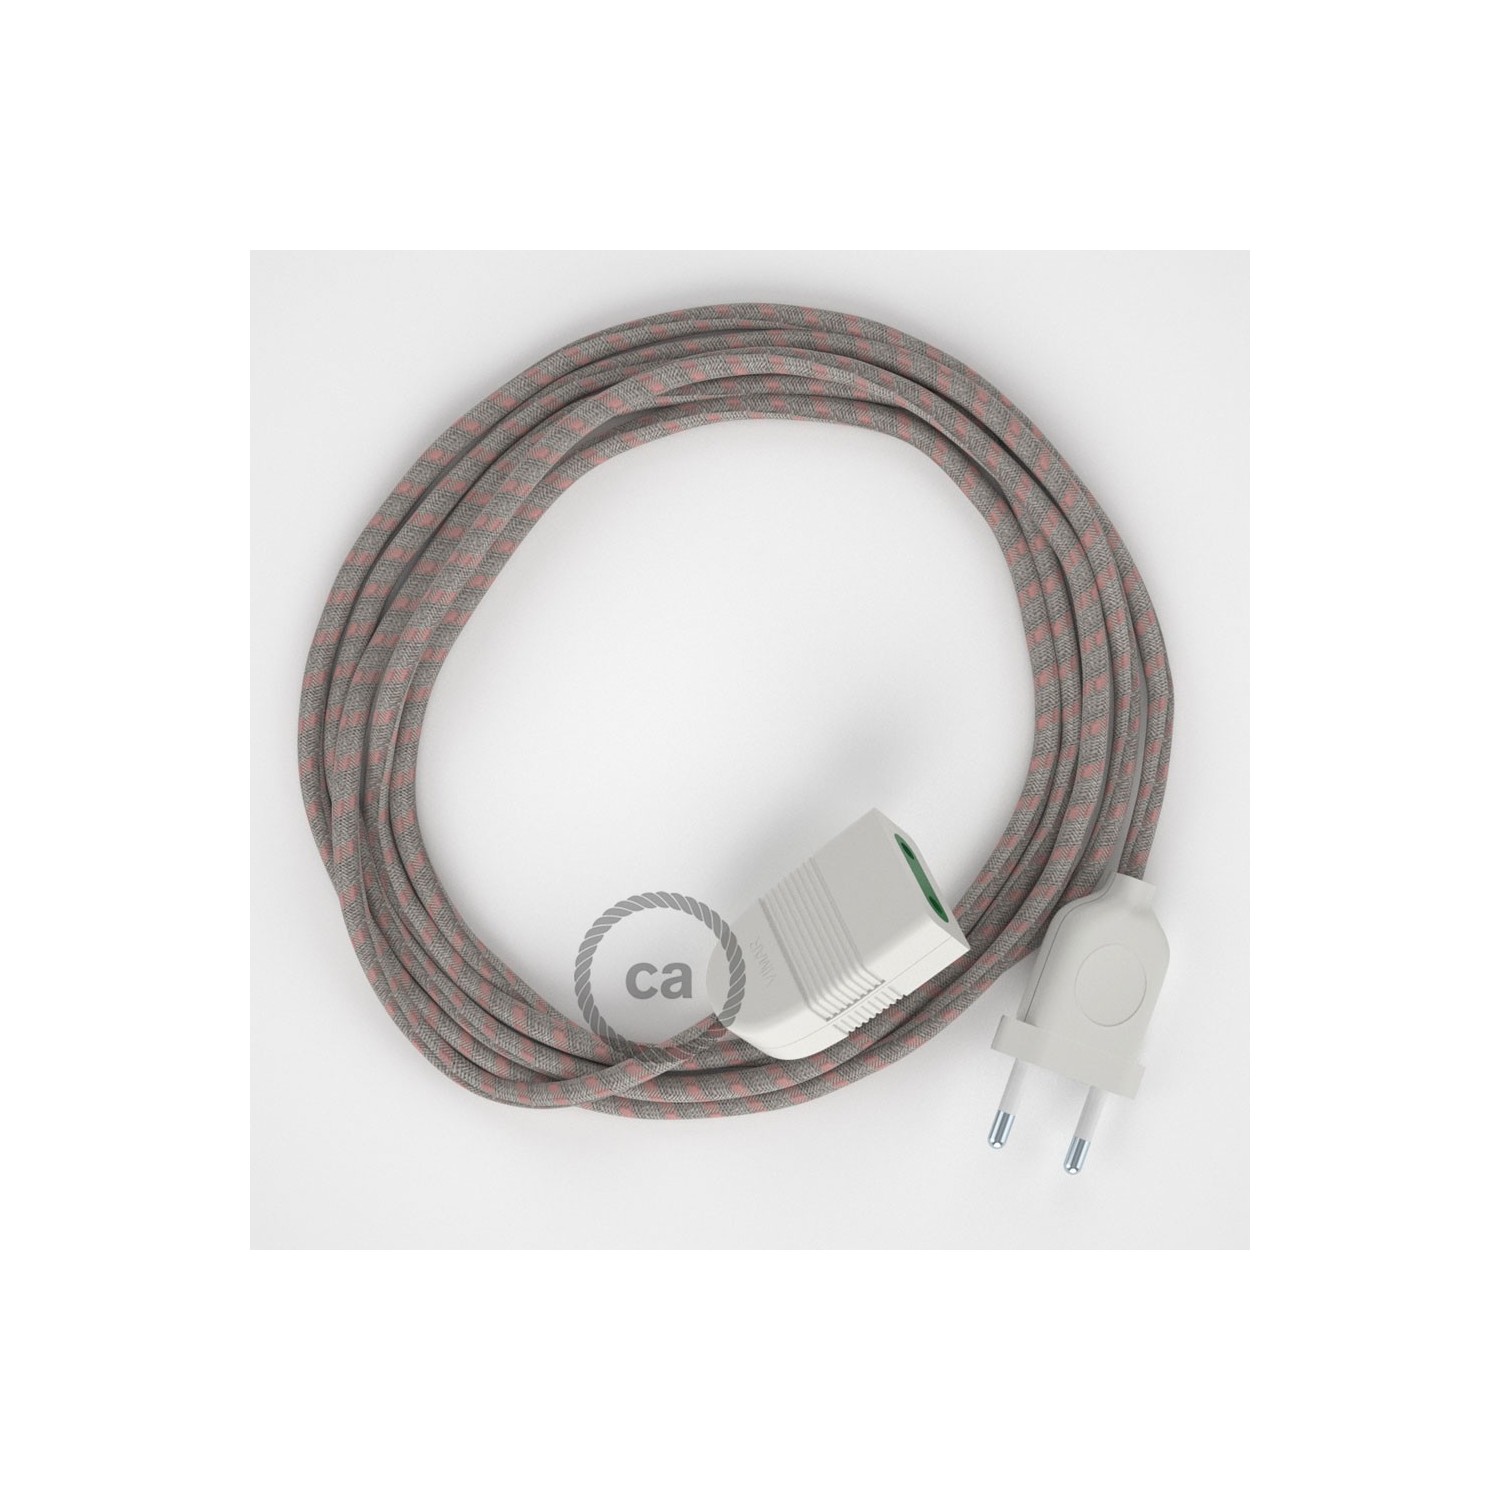 Produžni kabel za napajanje (2P 10A) Crte, Ružičasti Pamuk i Prirodni Lan RD51 - Made in Italy